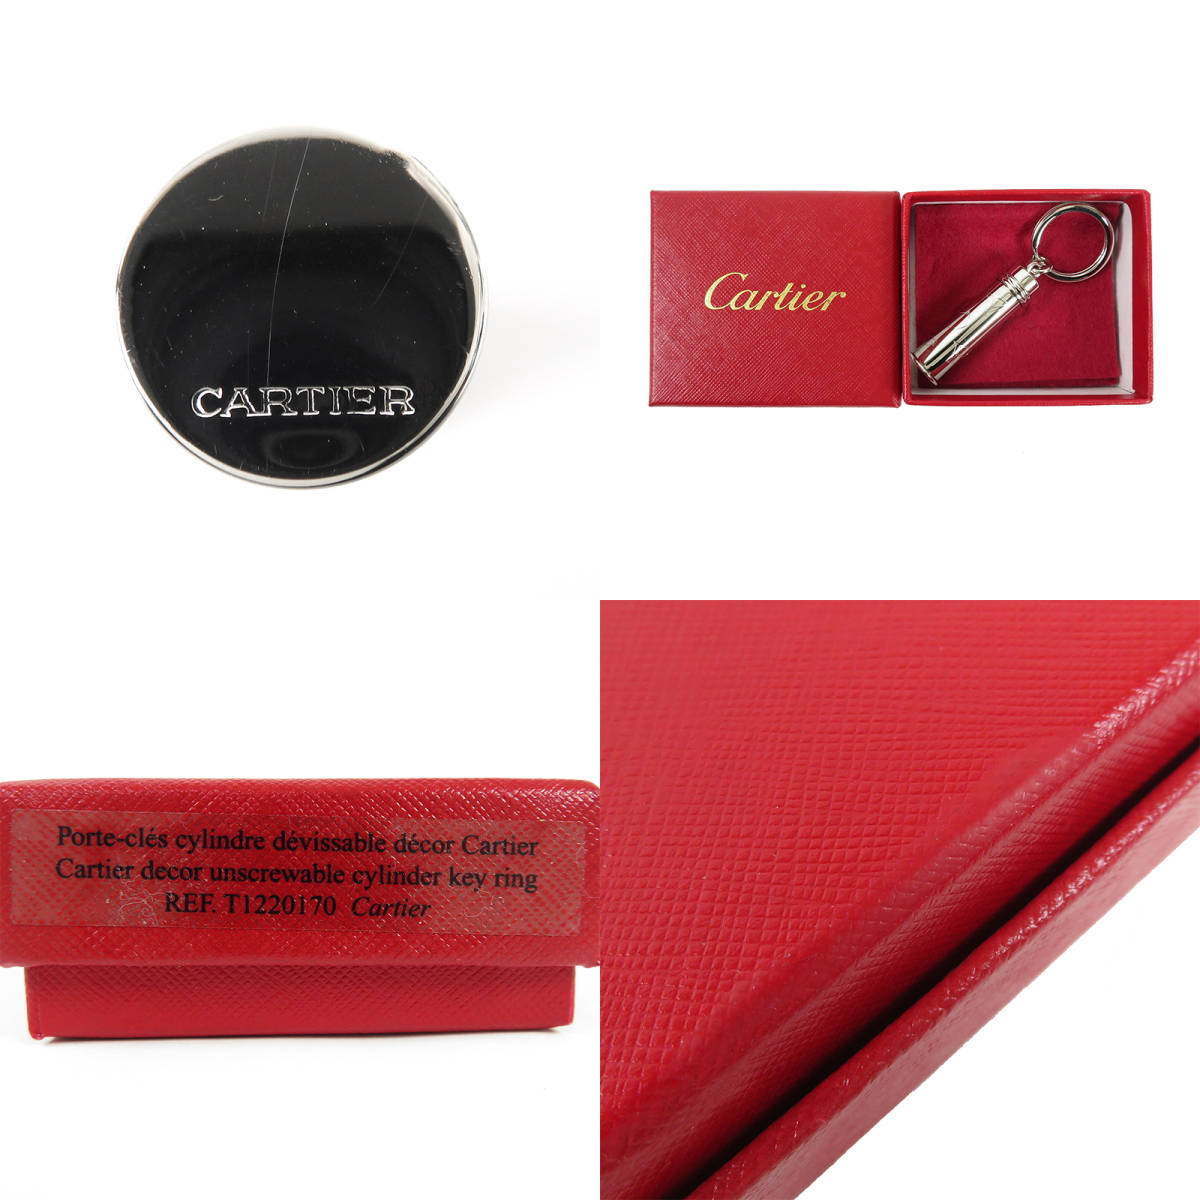 Cartier カルティエ ロゴ キーリング ピルケース シルバーカラー T1220170 装飾 シリンダー キーホルダー_画像10